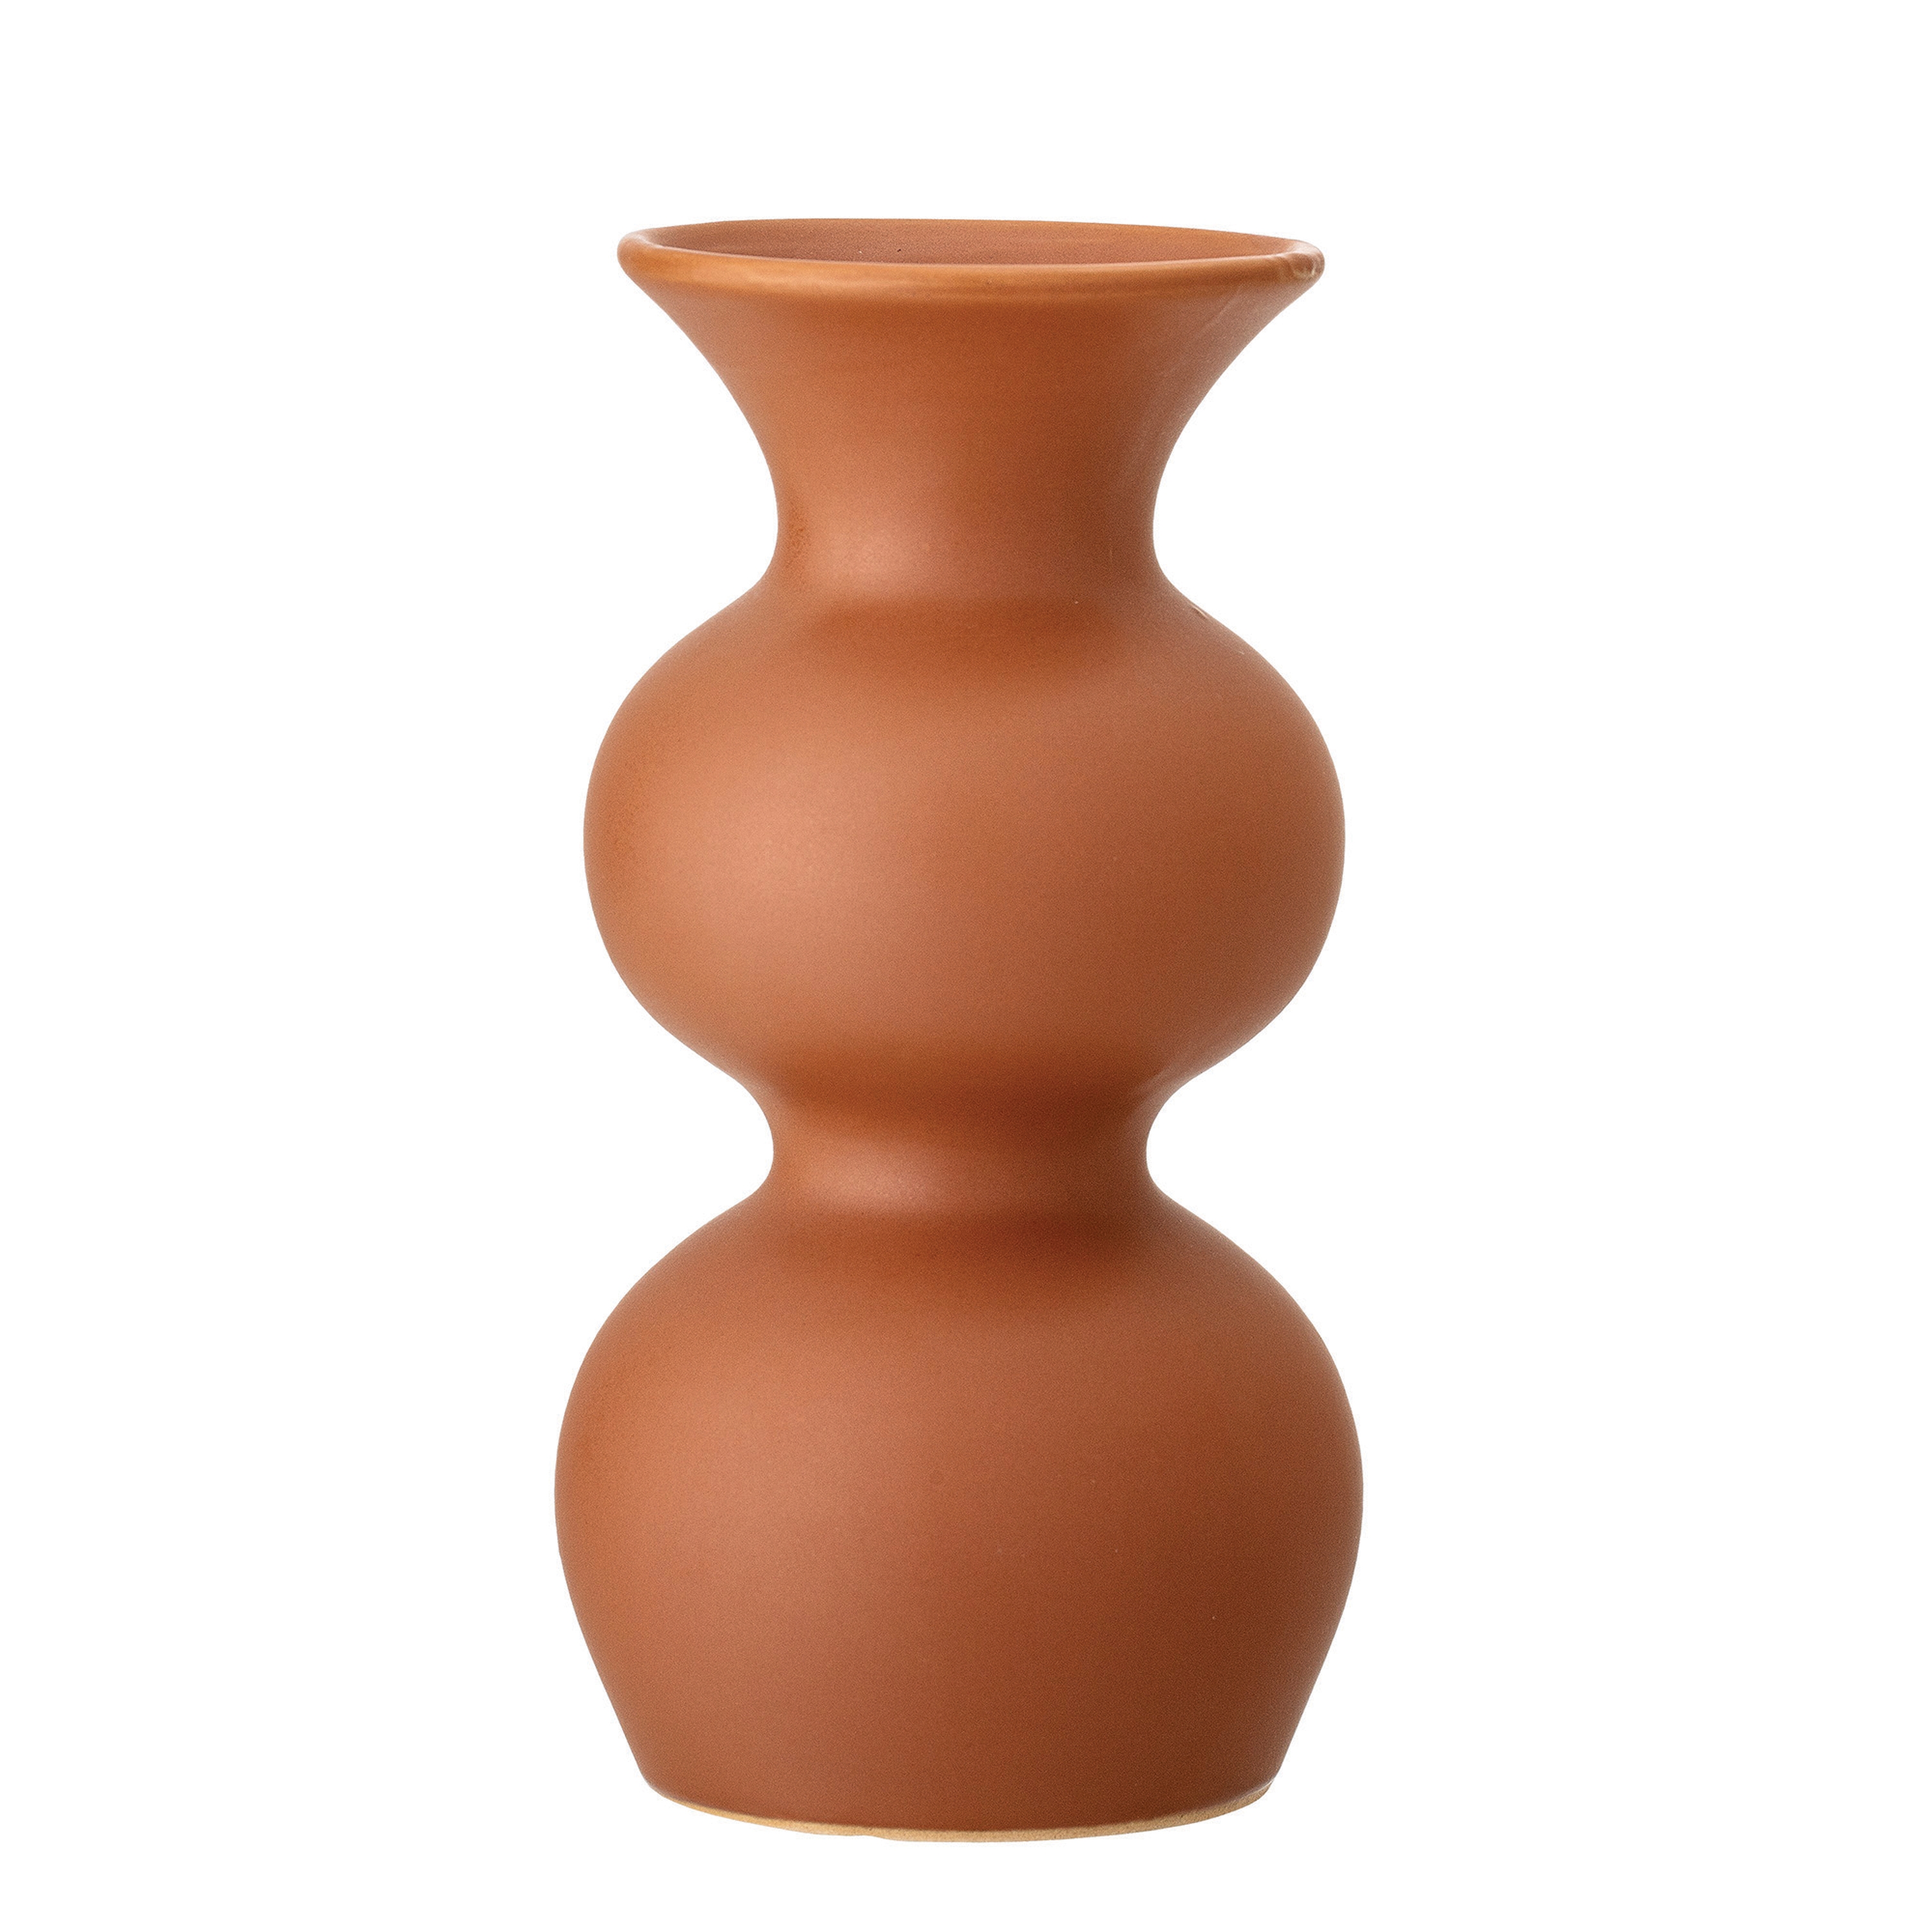 Shapely Sienna Stoneware Vase - Image 0